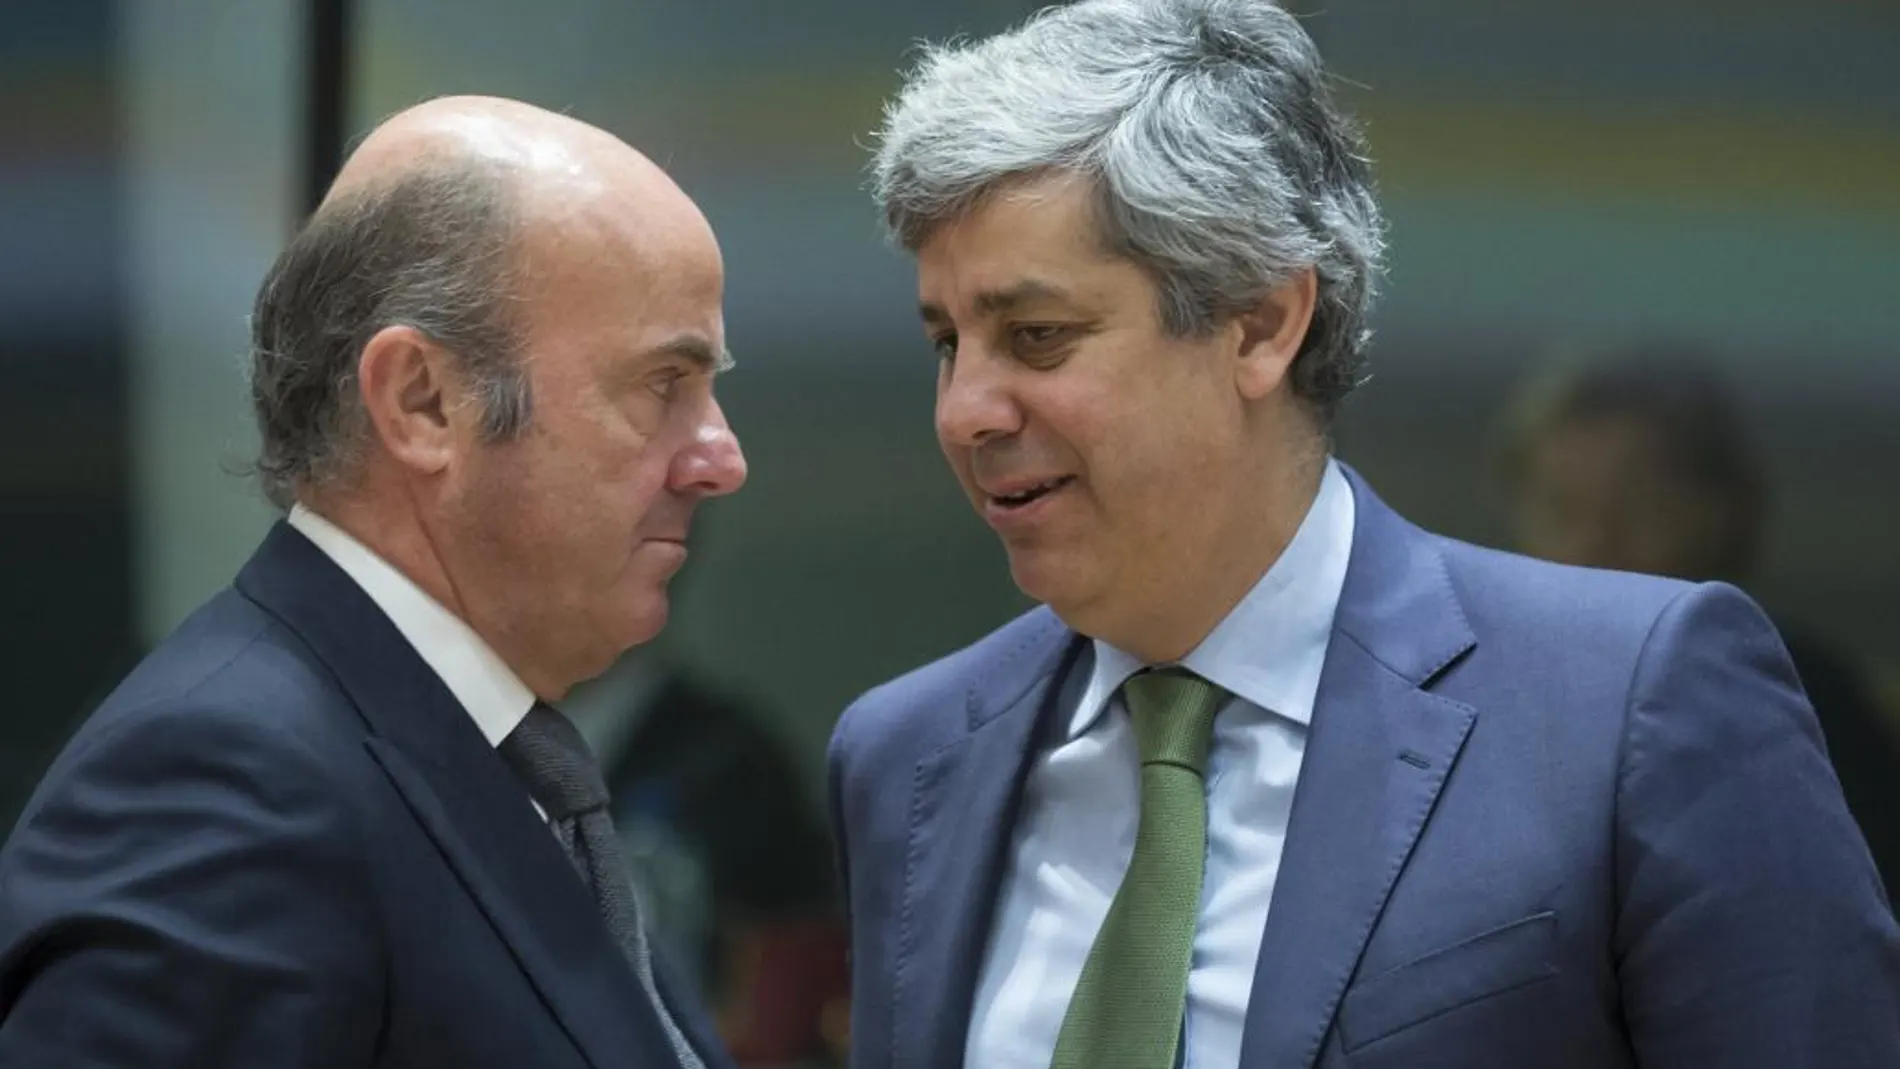 El ministro español de Economía, Luis de Guindos, conversa con el ministro de Finanzas portugués, Mario Centeno